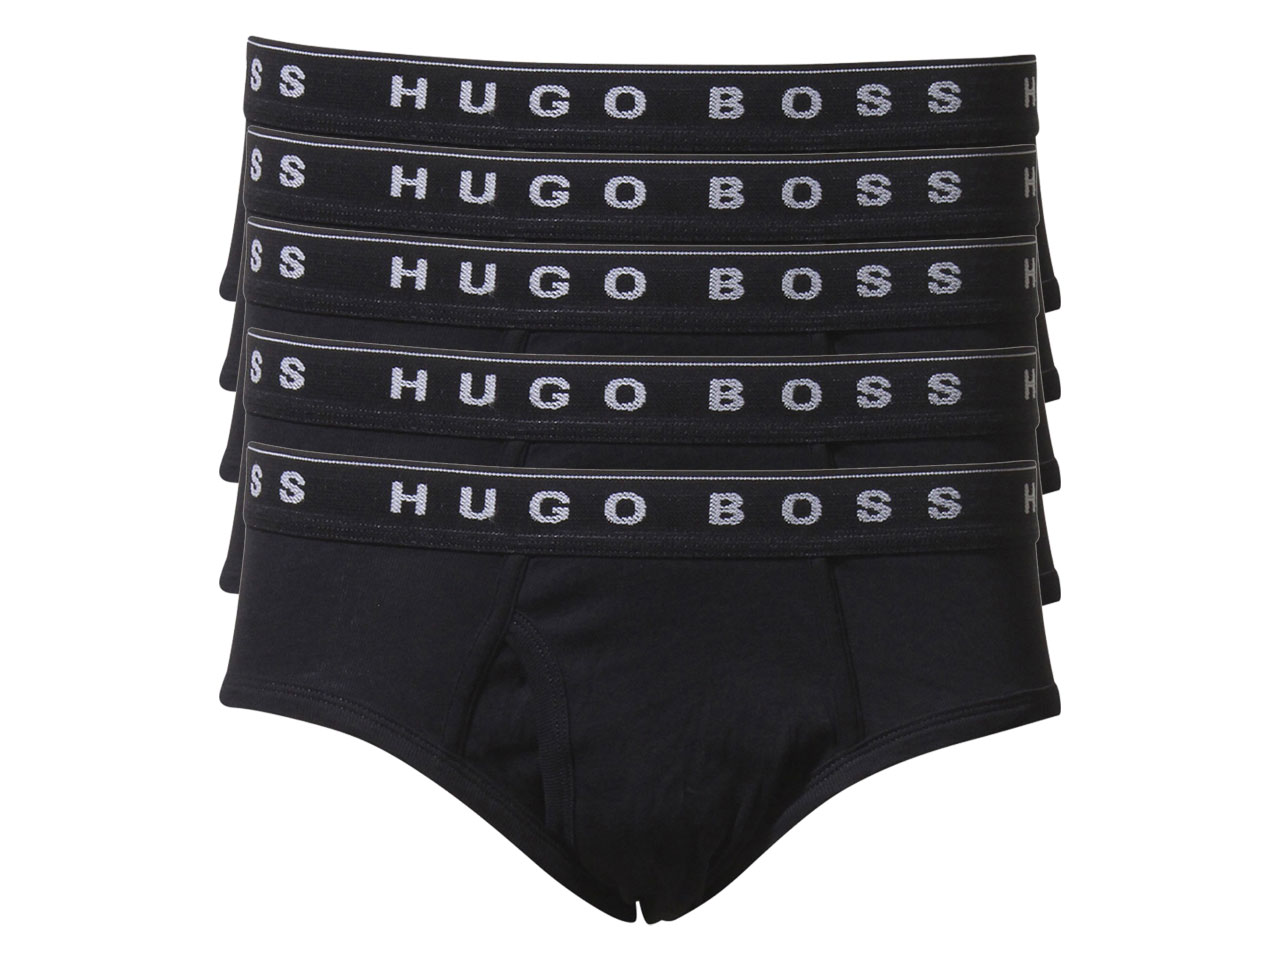 Size S M L XL Hugo Boss Men Underwear Boxers Briefs 5 Colors 